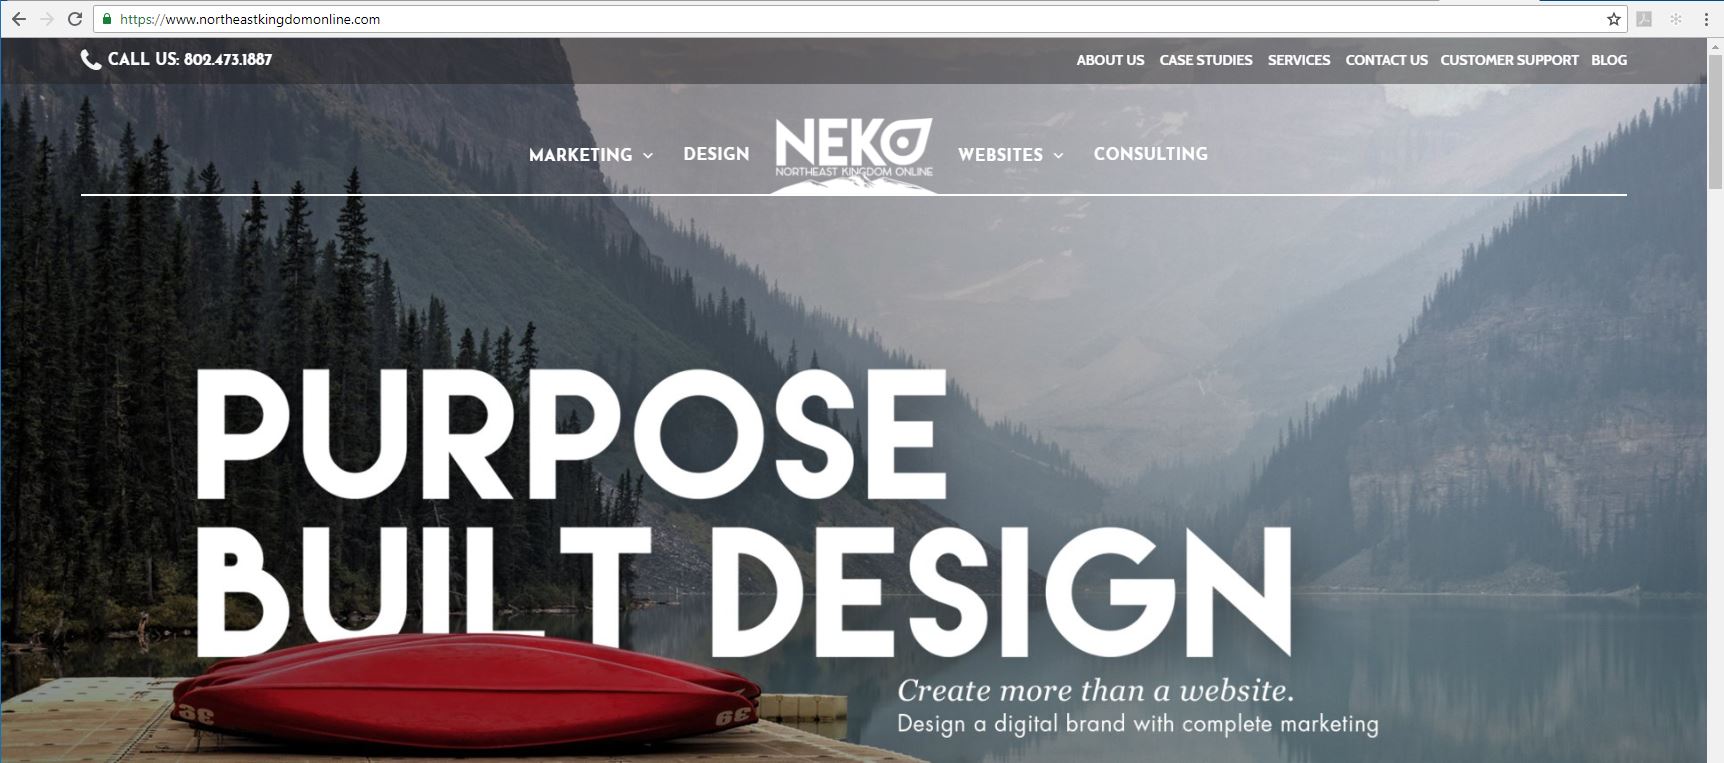 Northeast Kingdom Online Website Design in Vermont